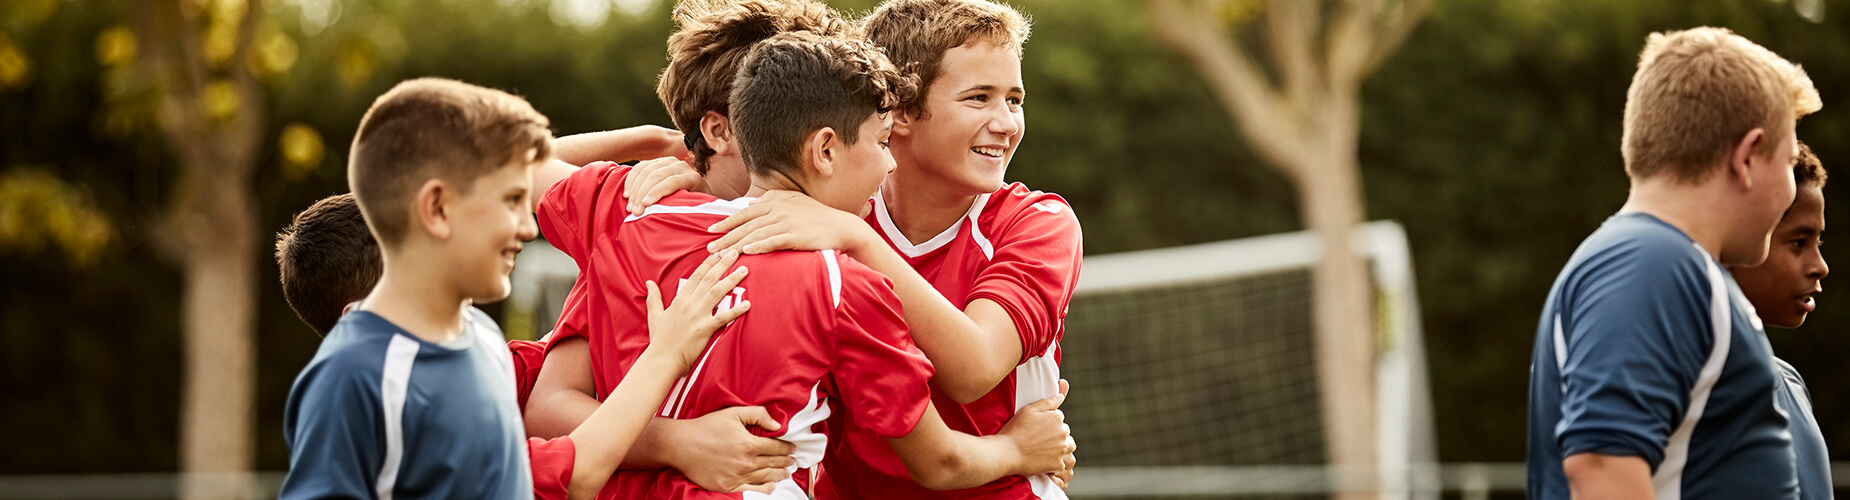 Gesellschaftliches Engagement - Kindern beim Fußball